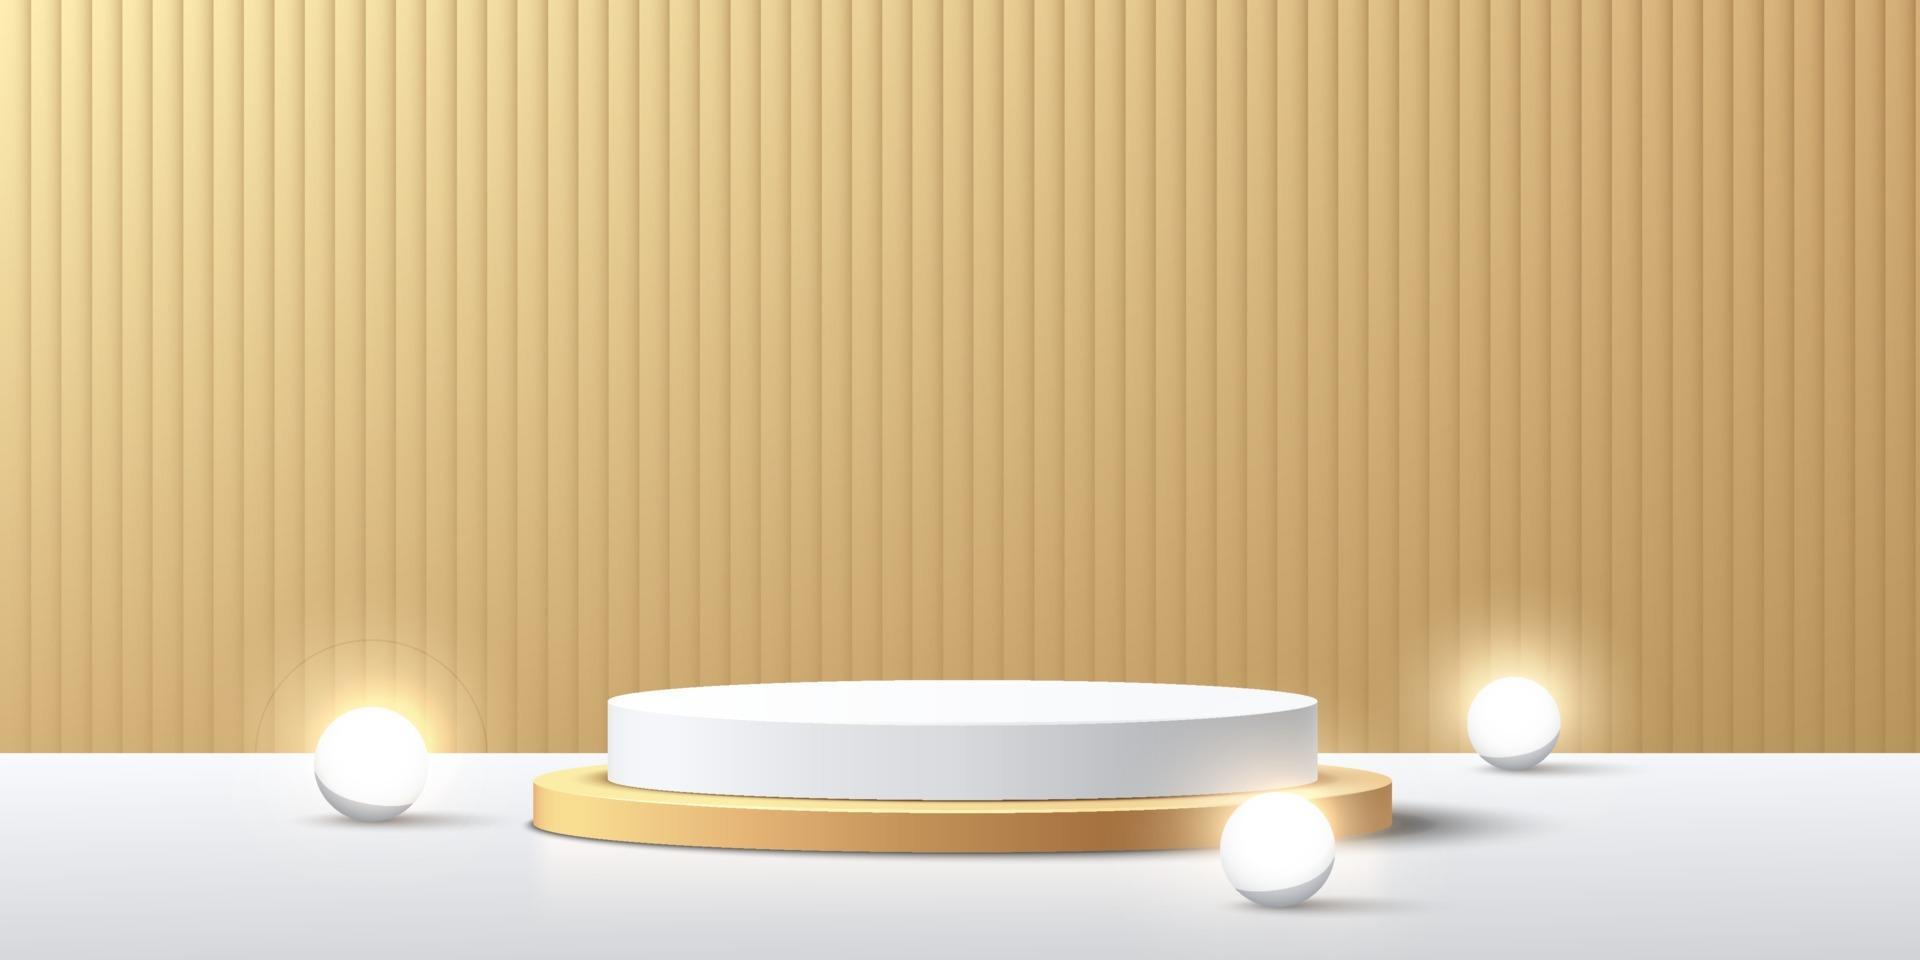 modernt vitt och guldcylindrigt piedestal med neonsfärskula. abstrakt gyllene färg minimal scen. vertikala ränder textur bakgrund. vektor rendering 3d form, produkt display presentation.